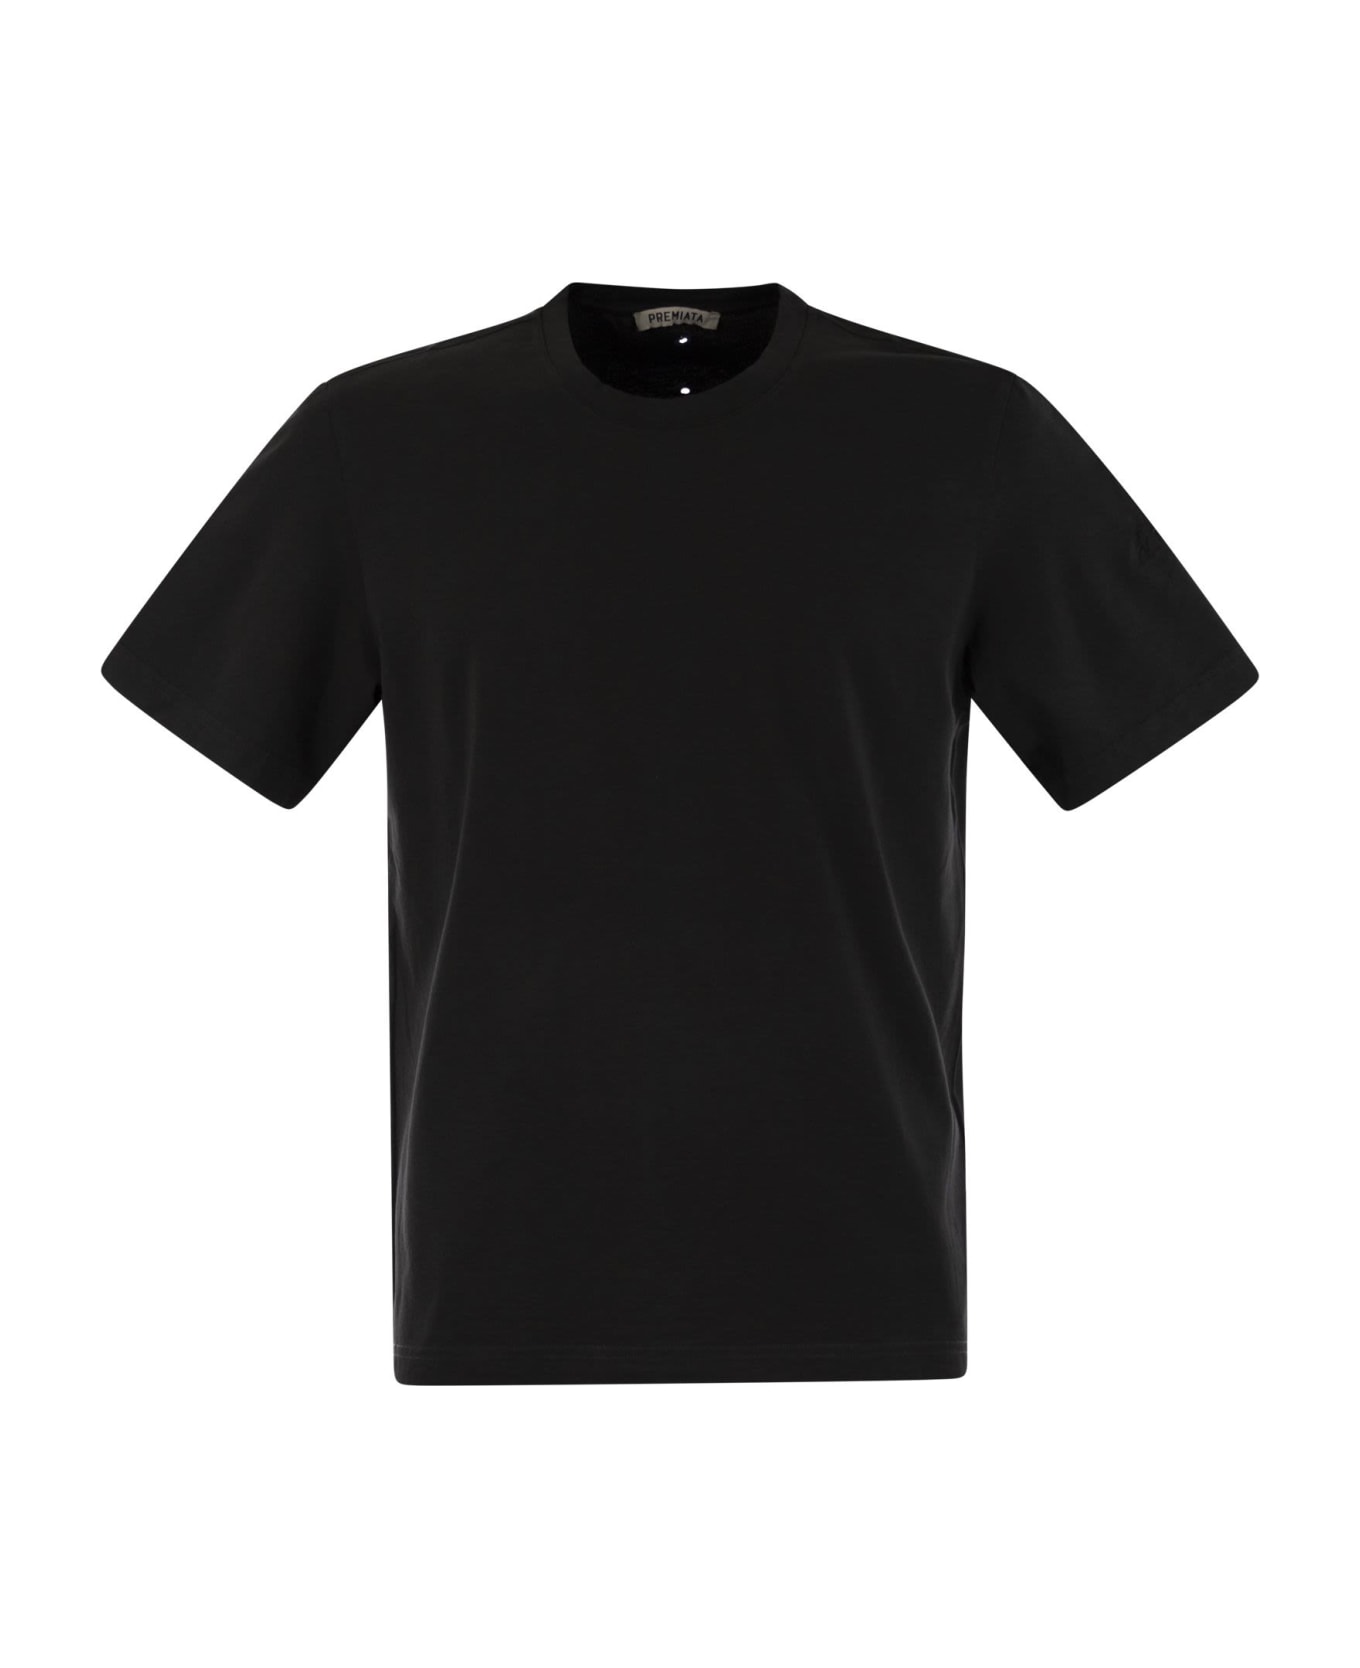 Premiata Cotton Jersey T-shirt - Black シャツ